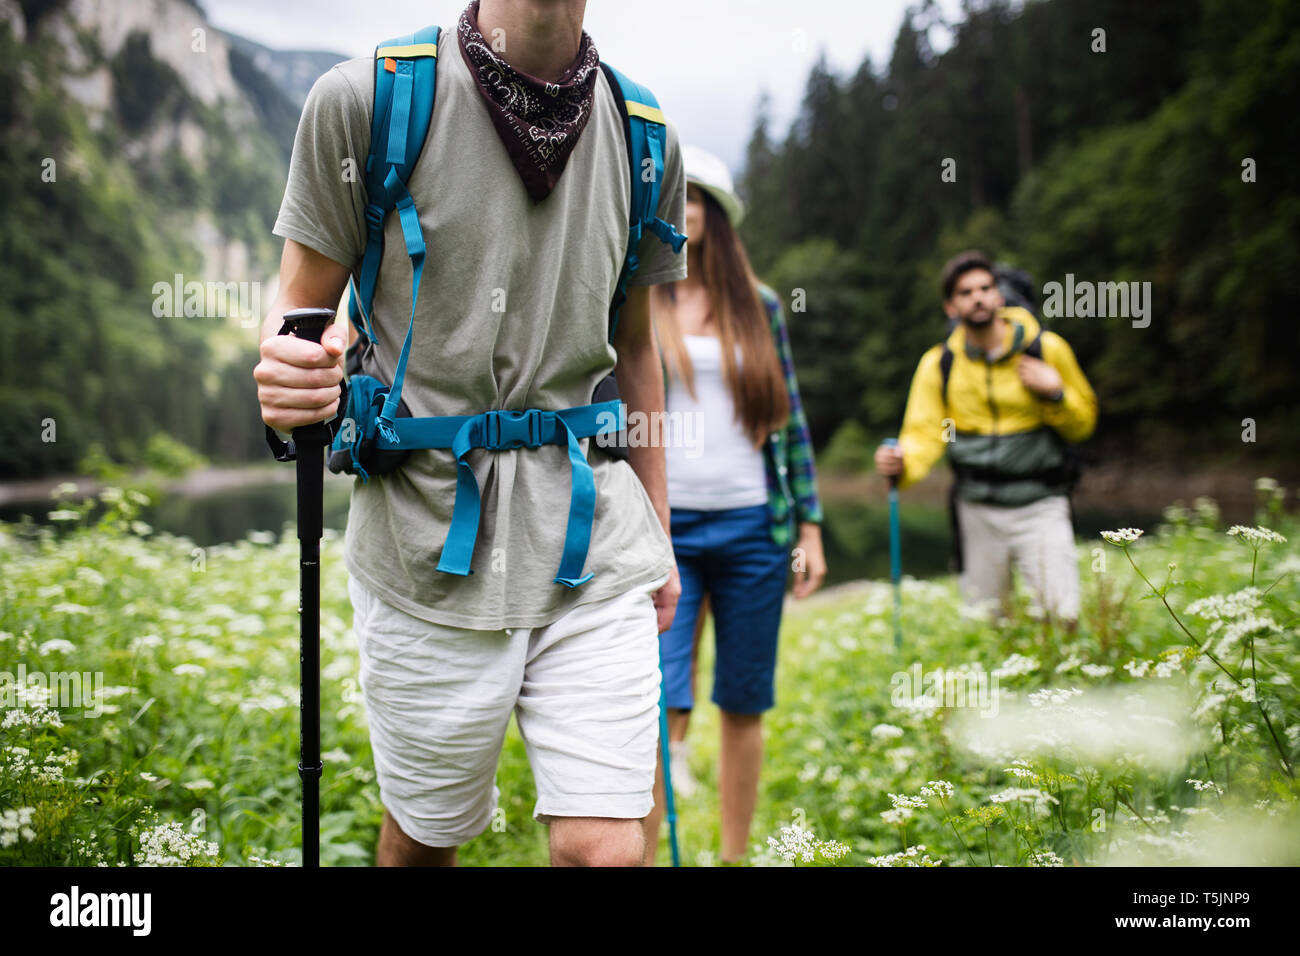 Wandern, Campen, Wandern, wilde Leben Konzept. Sind eine Gruppe von Freunden Wandern in der Natur Stockfoto